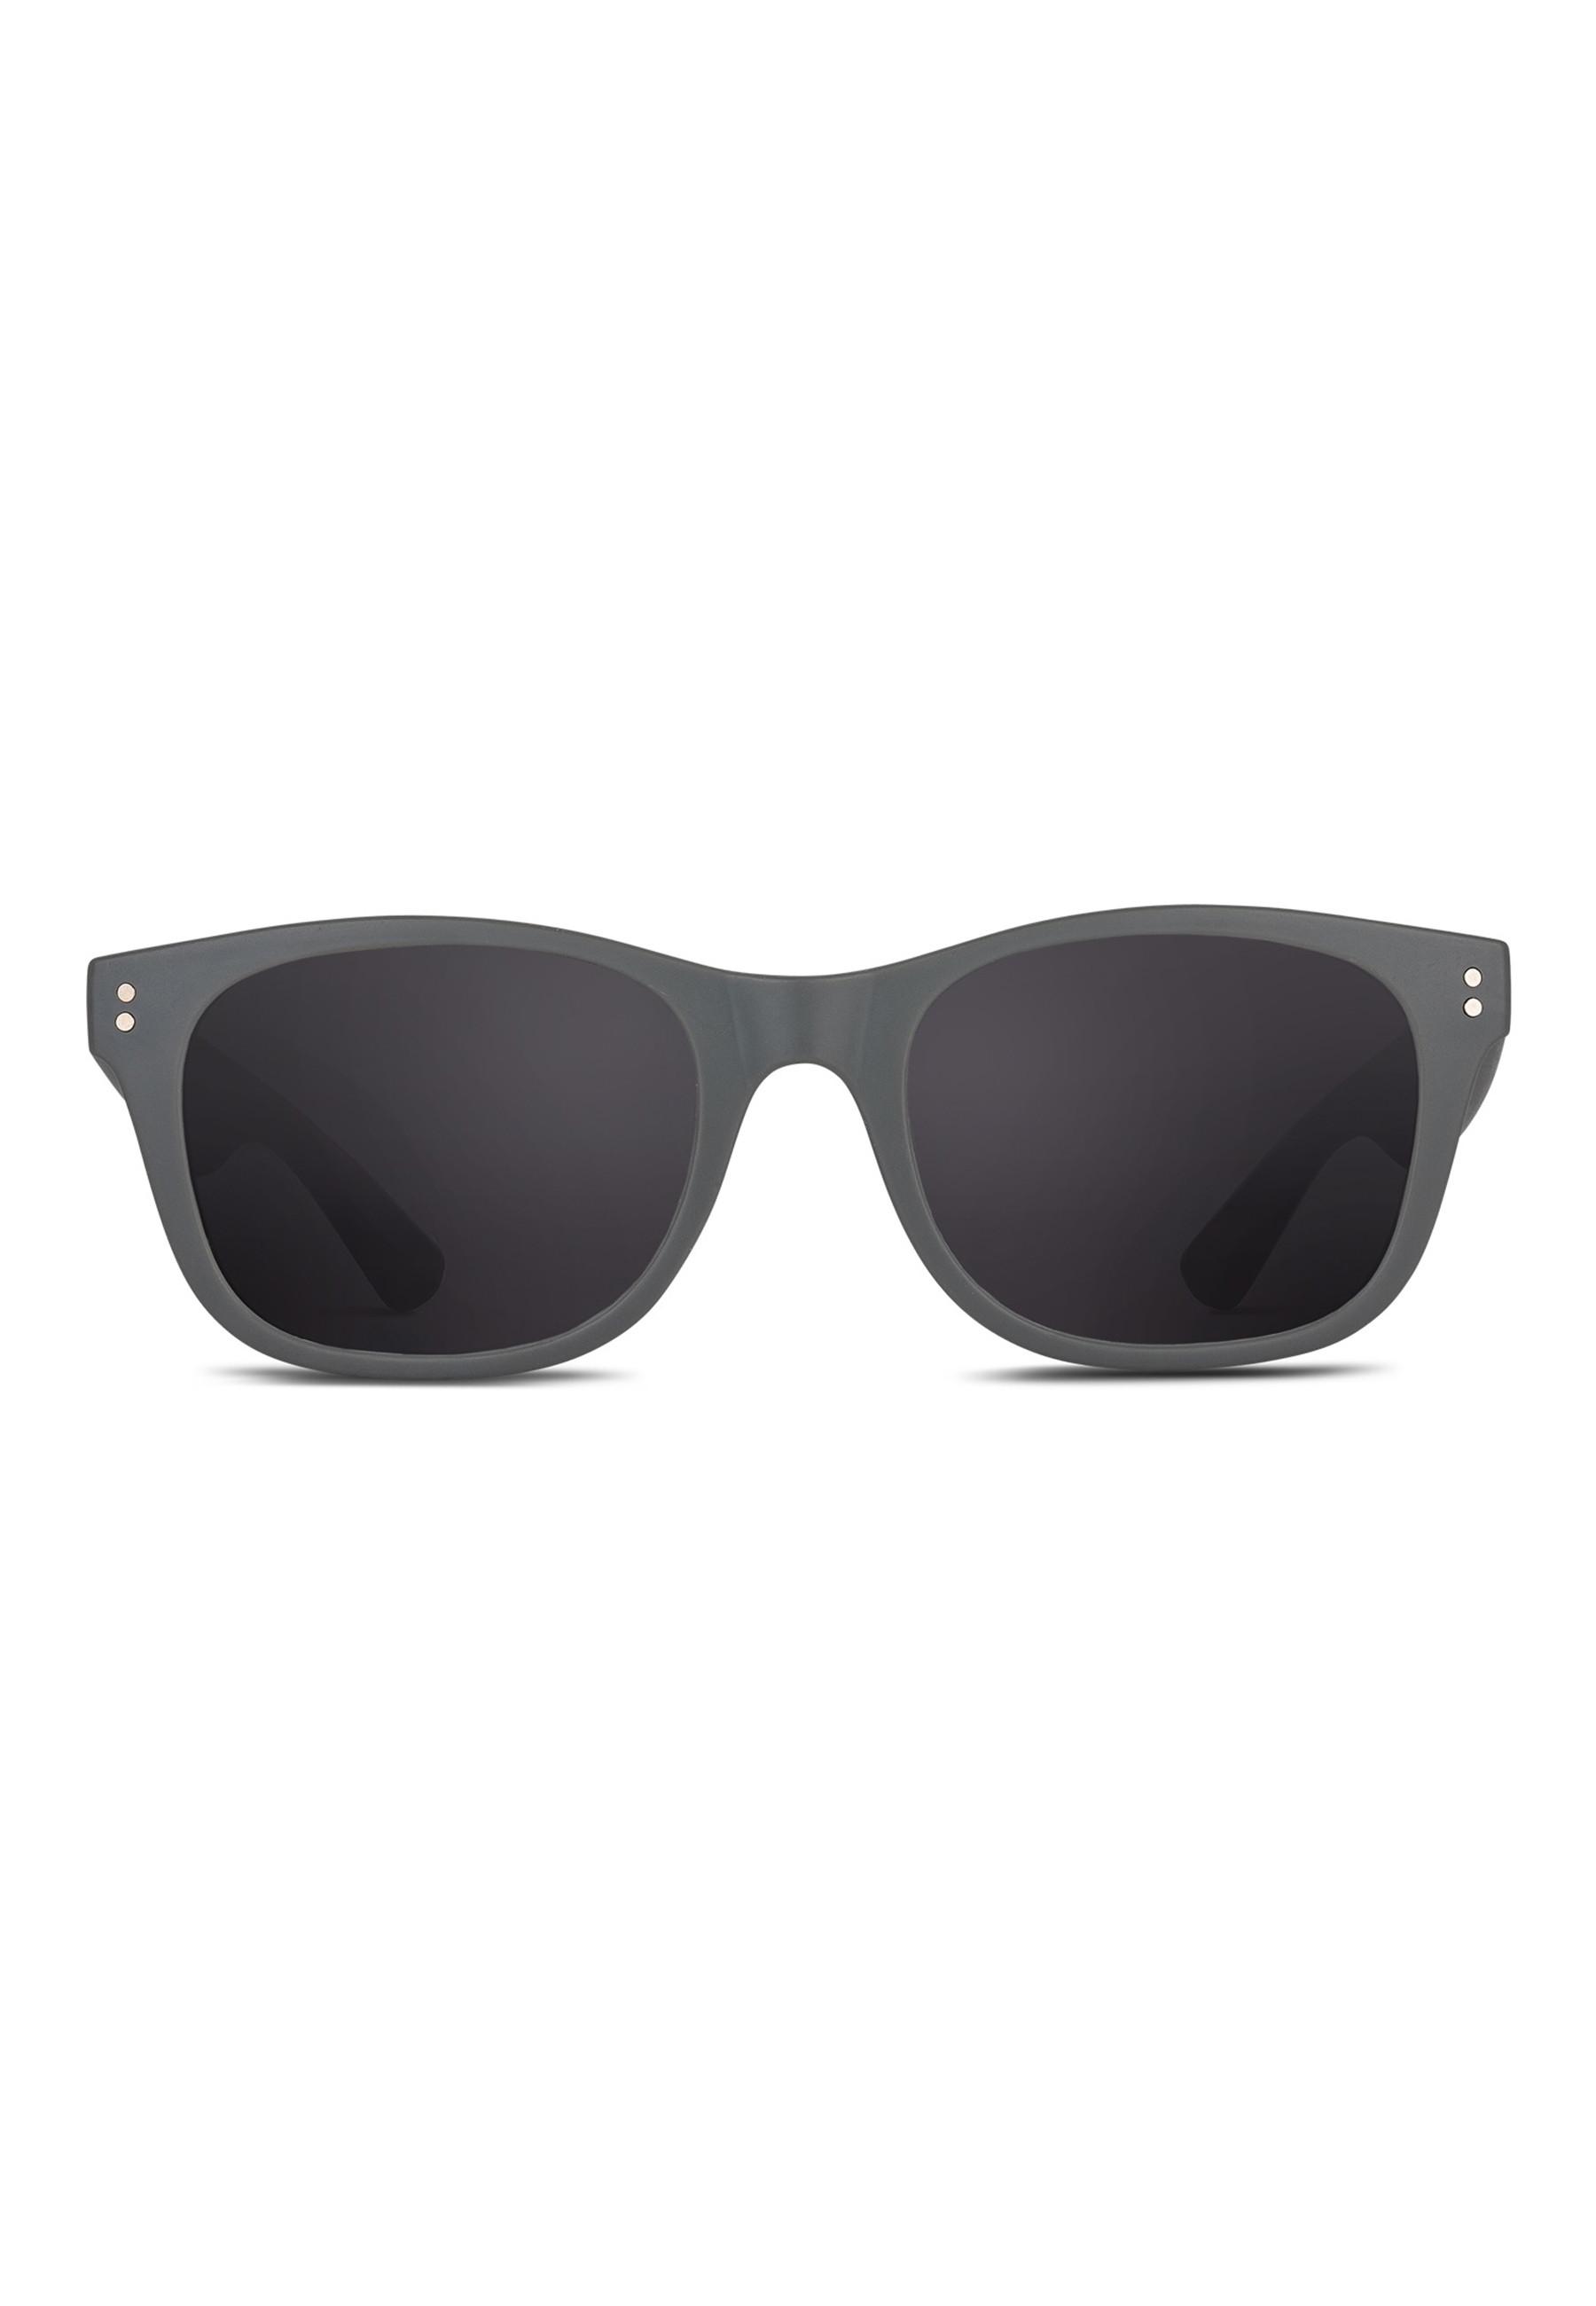 Smooder  Sonnenbrille mit 100% UV-Schutz 